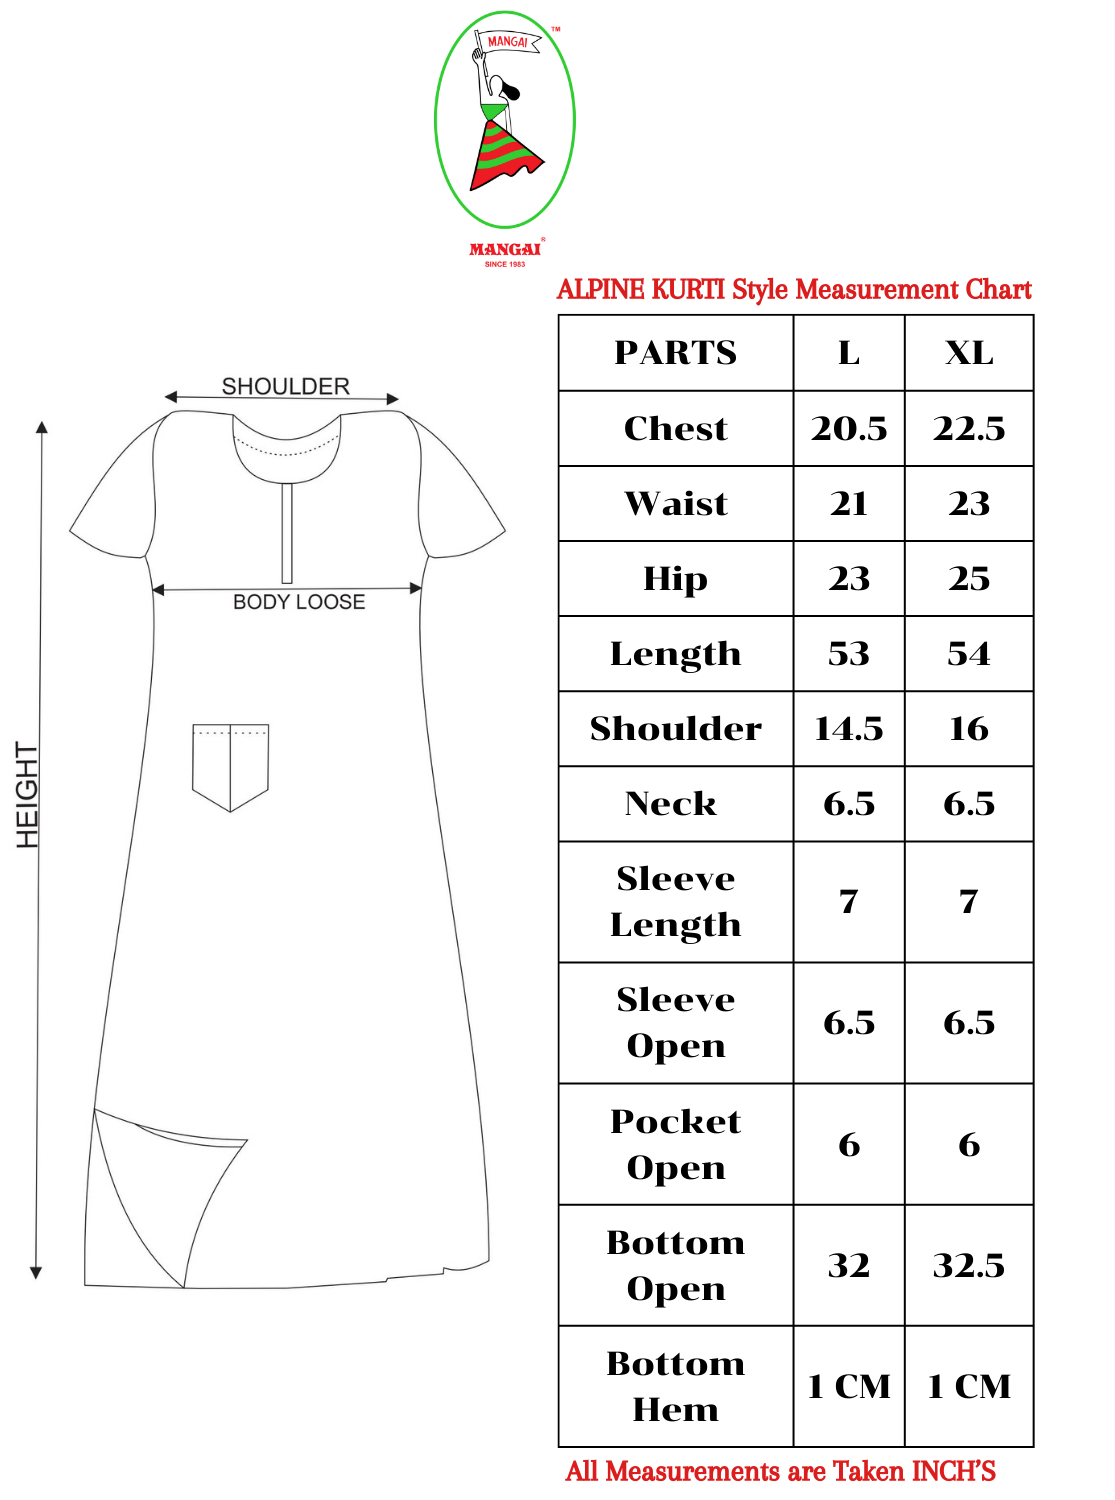 NewMANGAI Alpine KURTI Style | Beautiful Stylish KURTI Model | Fresh Collection's for Stylish Women's